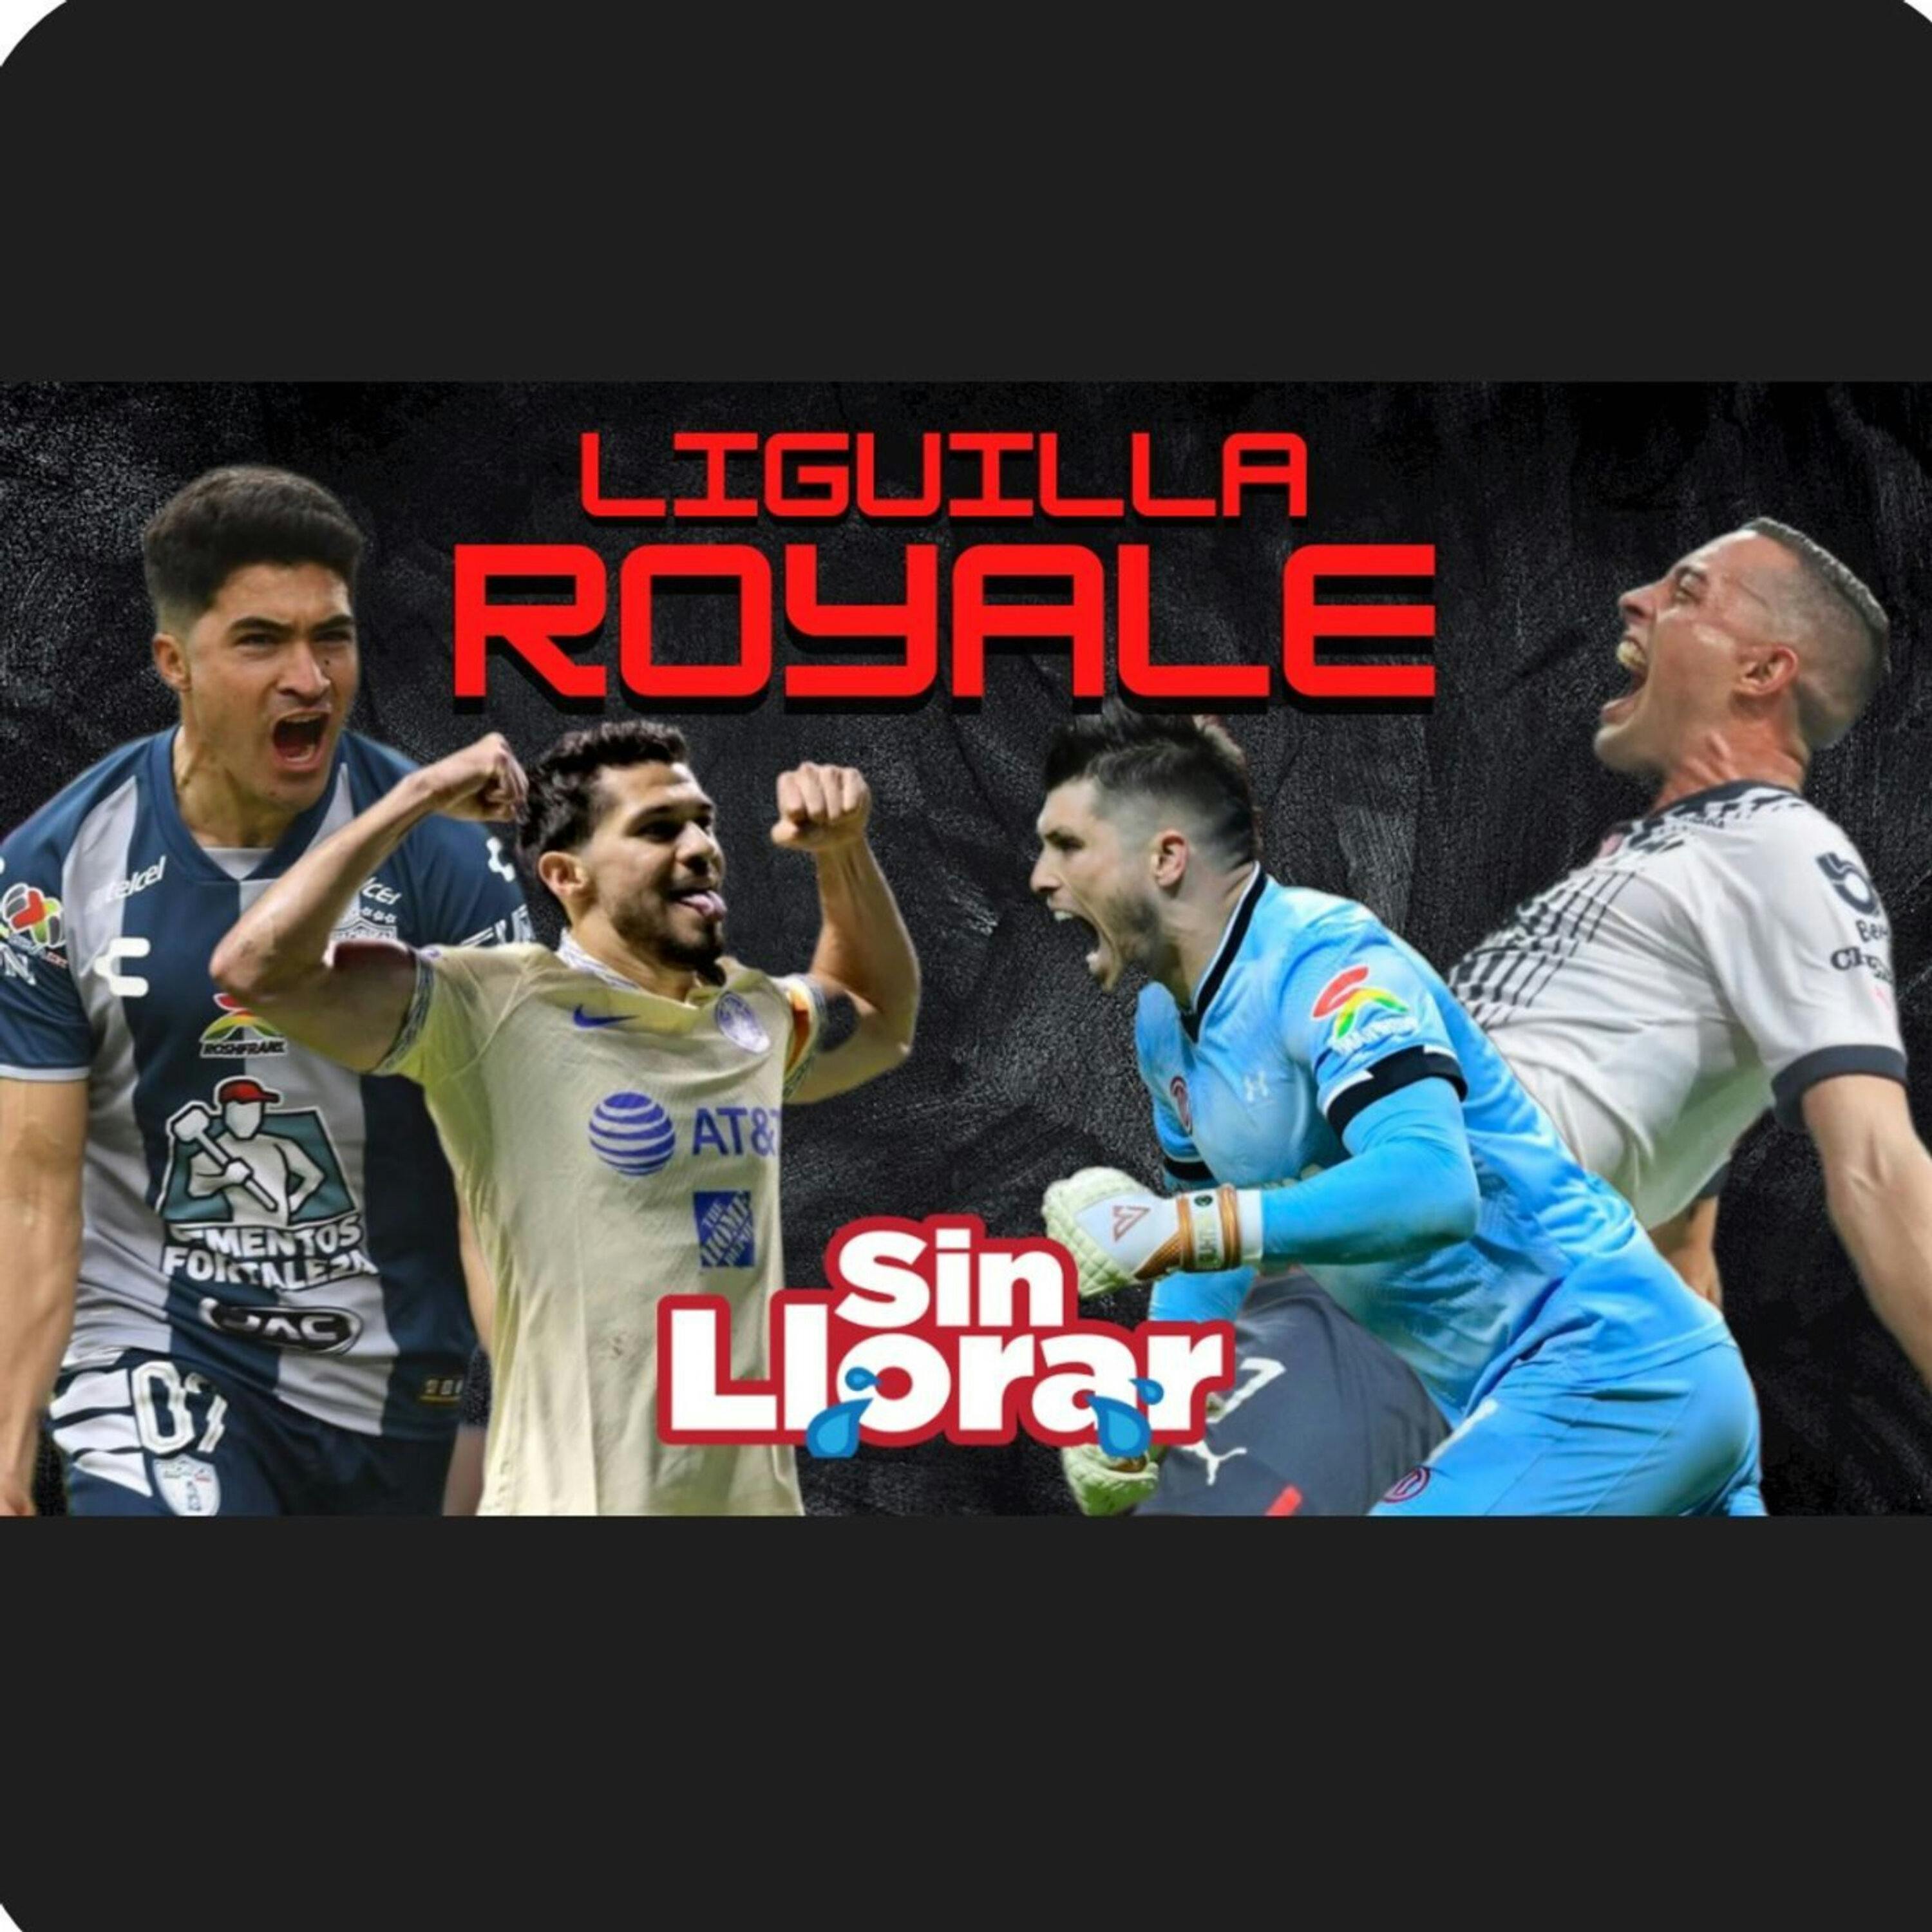 #168 - Liguilla Royale | Rumbo a la Final